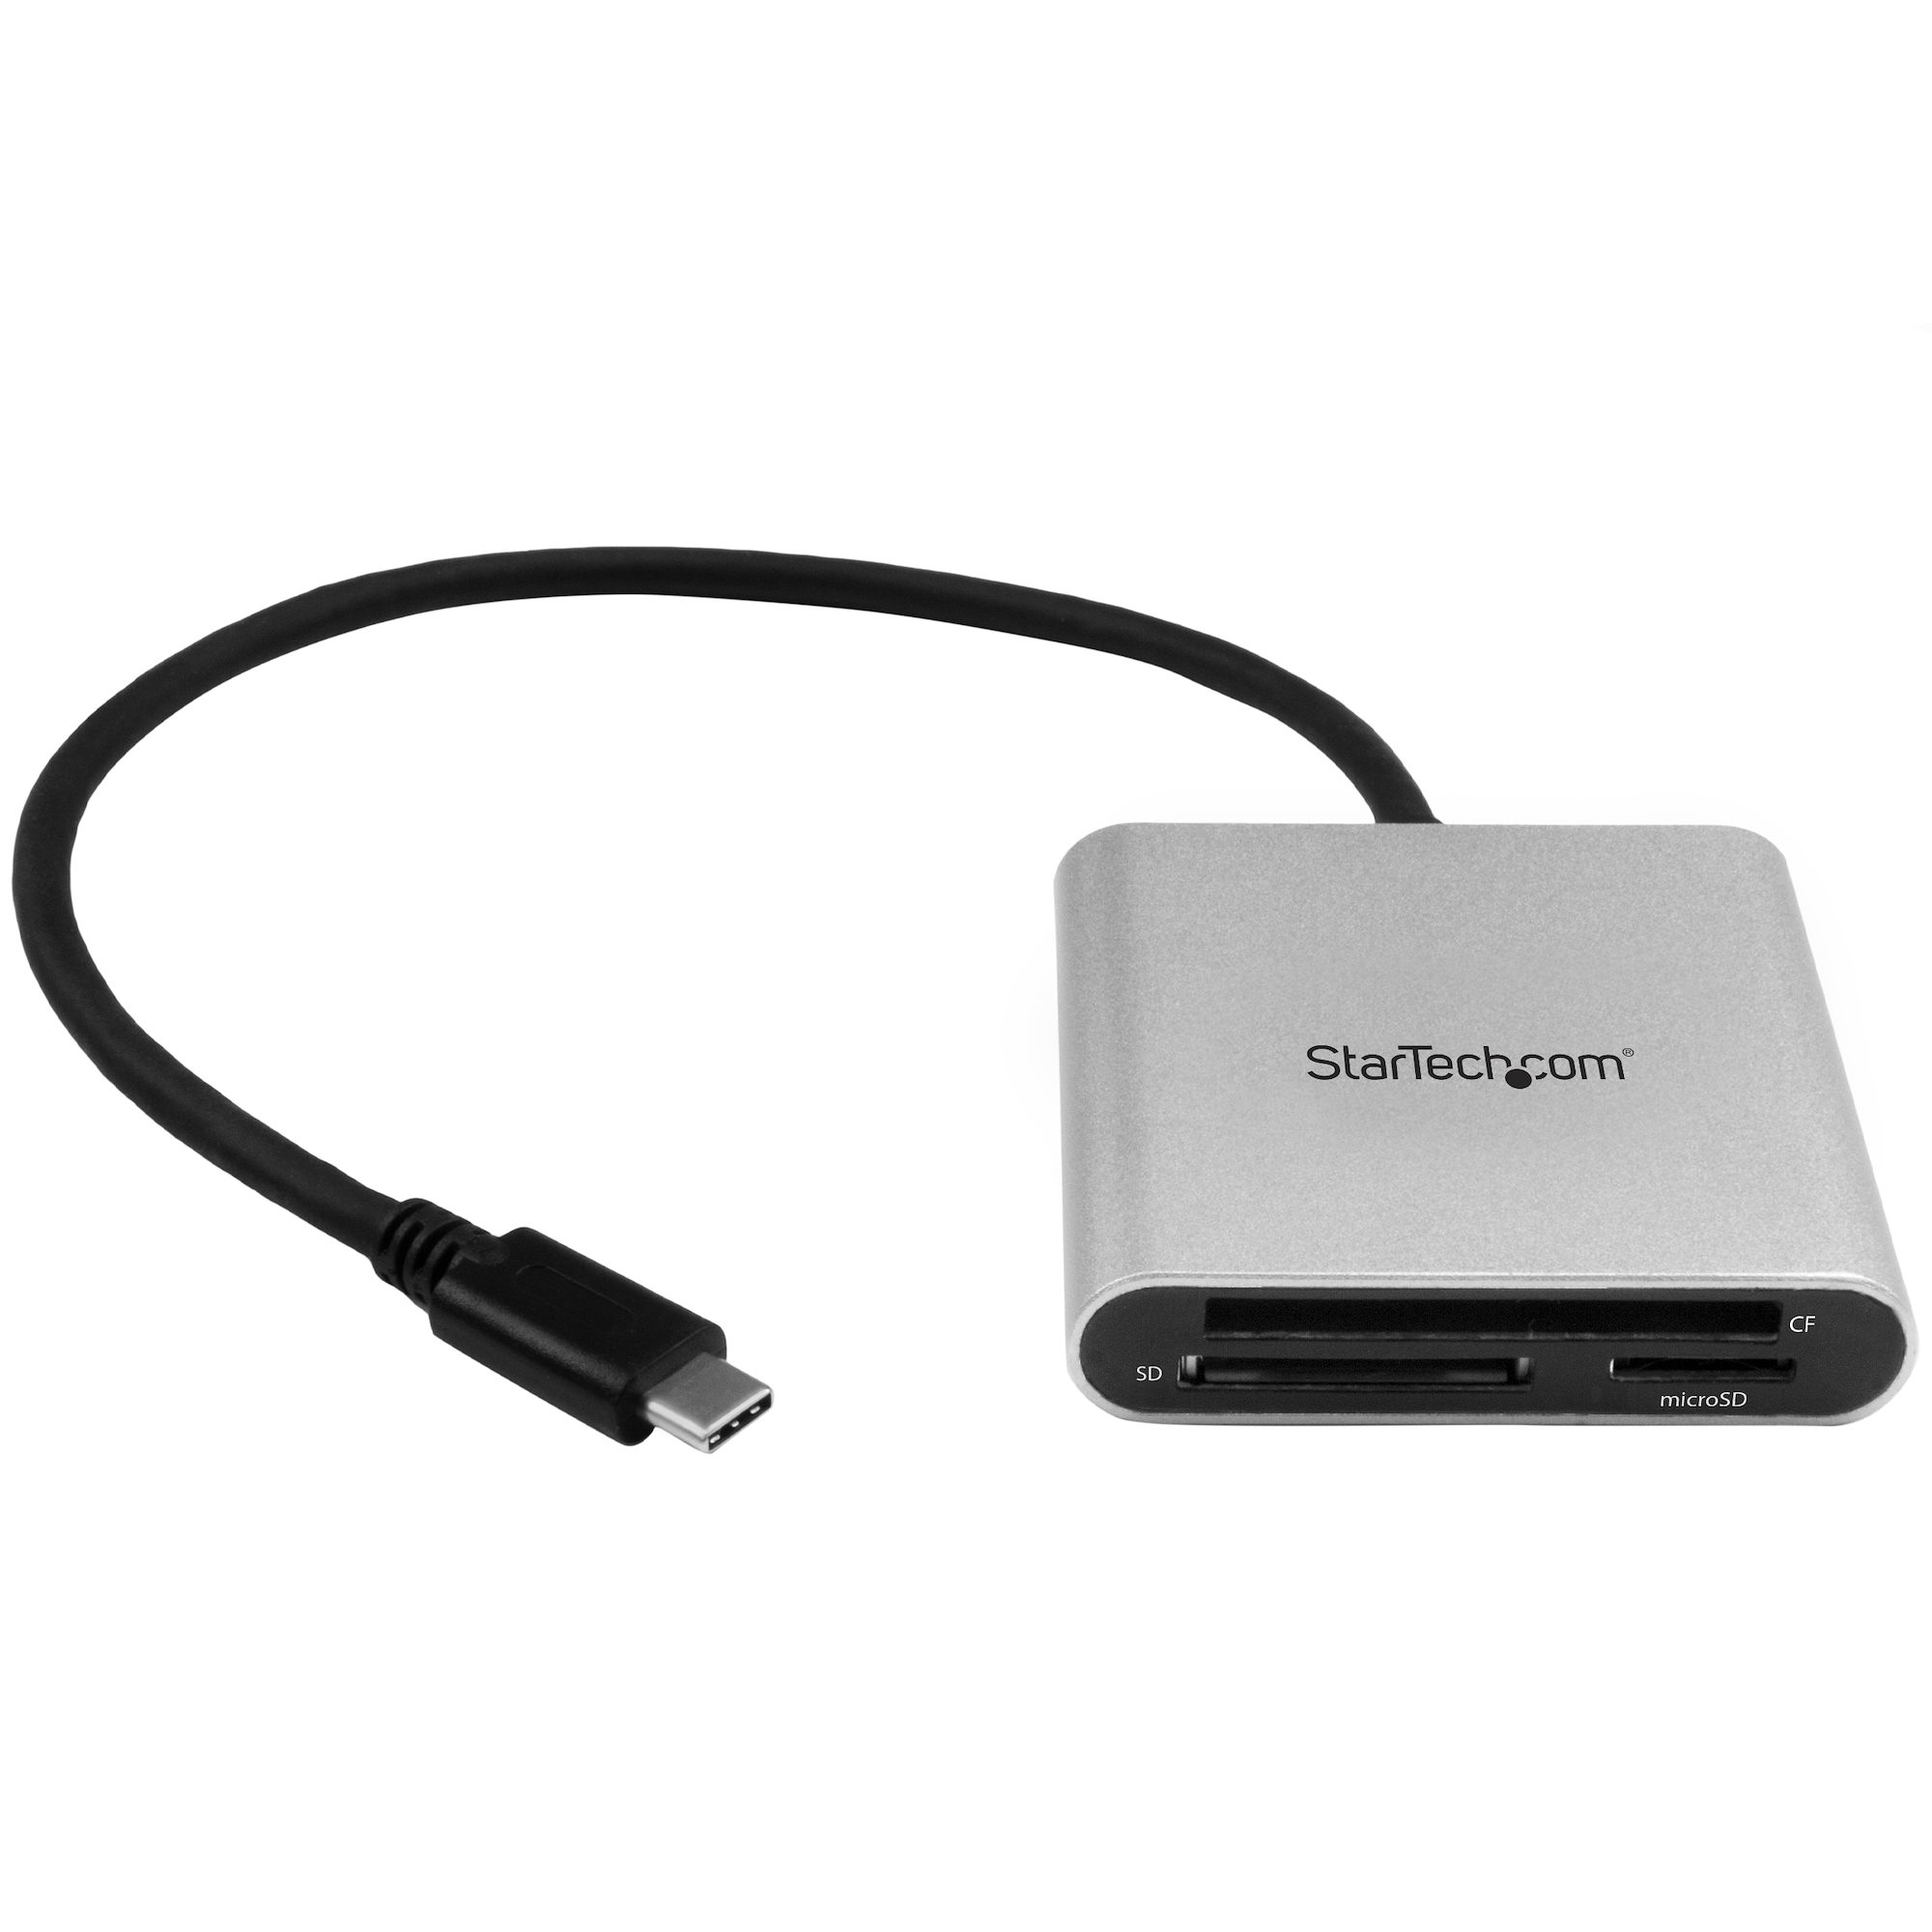 Folleto Glosario Faial Card Reader SD microSD CompactFlash USBC - USB Card Readers | StarTech.com